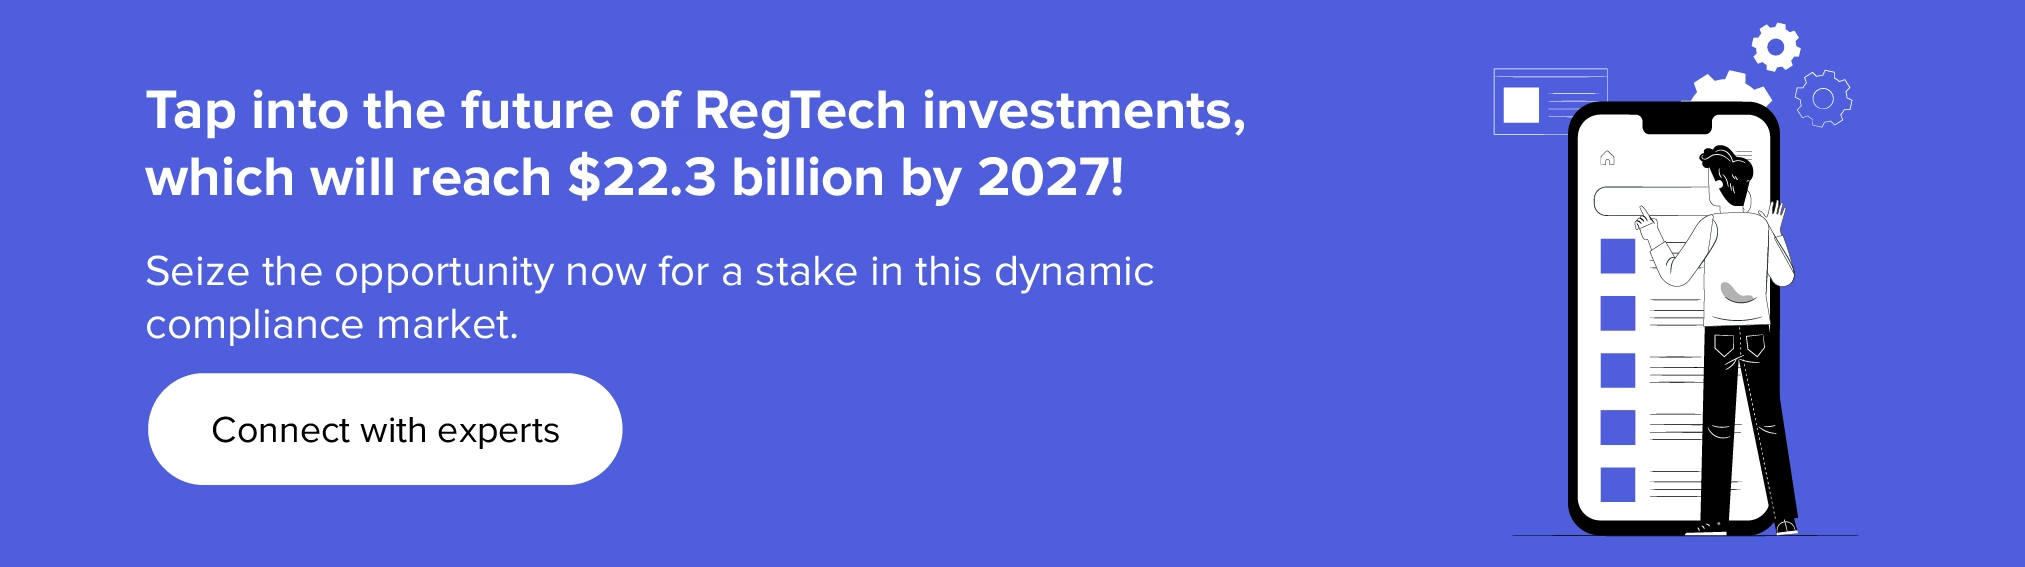 Sfrutta il futuro degli investimenti RegTech con i nostri esperti